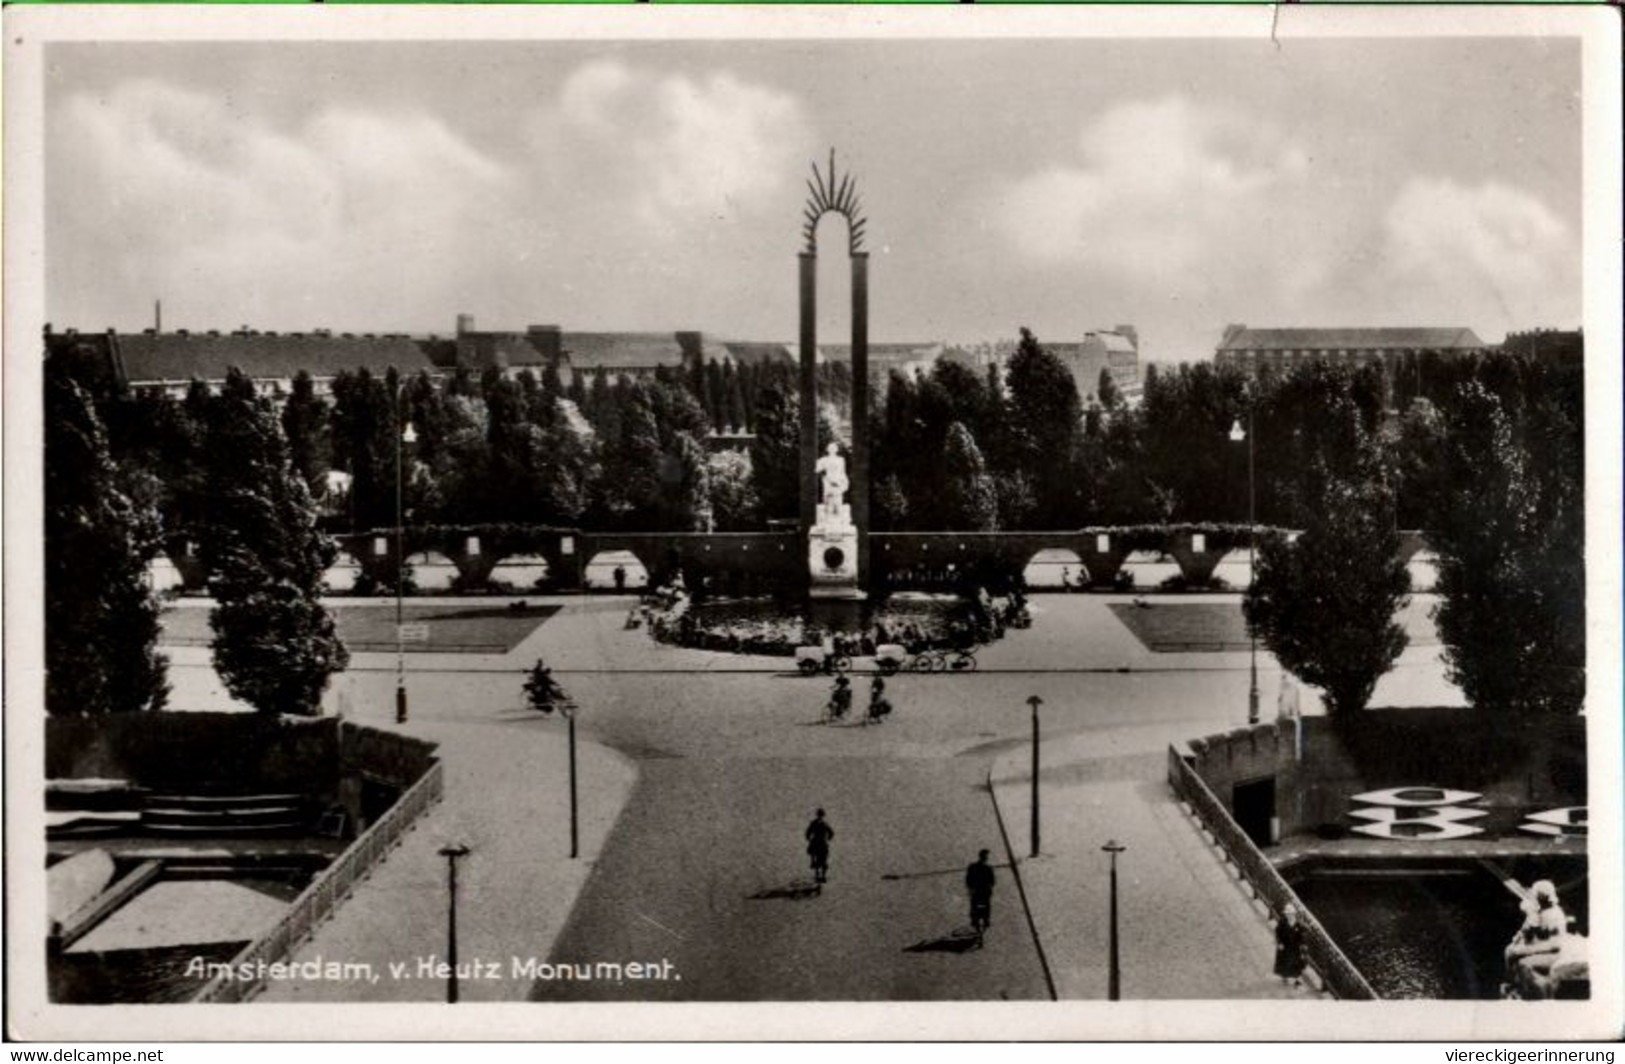 ! Alte Ansichtskarte Aus Amsterdam, V. Heutz Monument, 1942, Steno ?, Geheimschrift, Secret Writing - Amsterdam